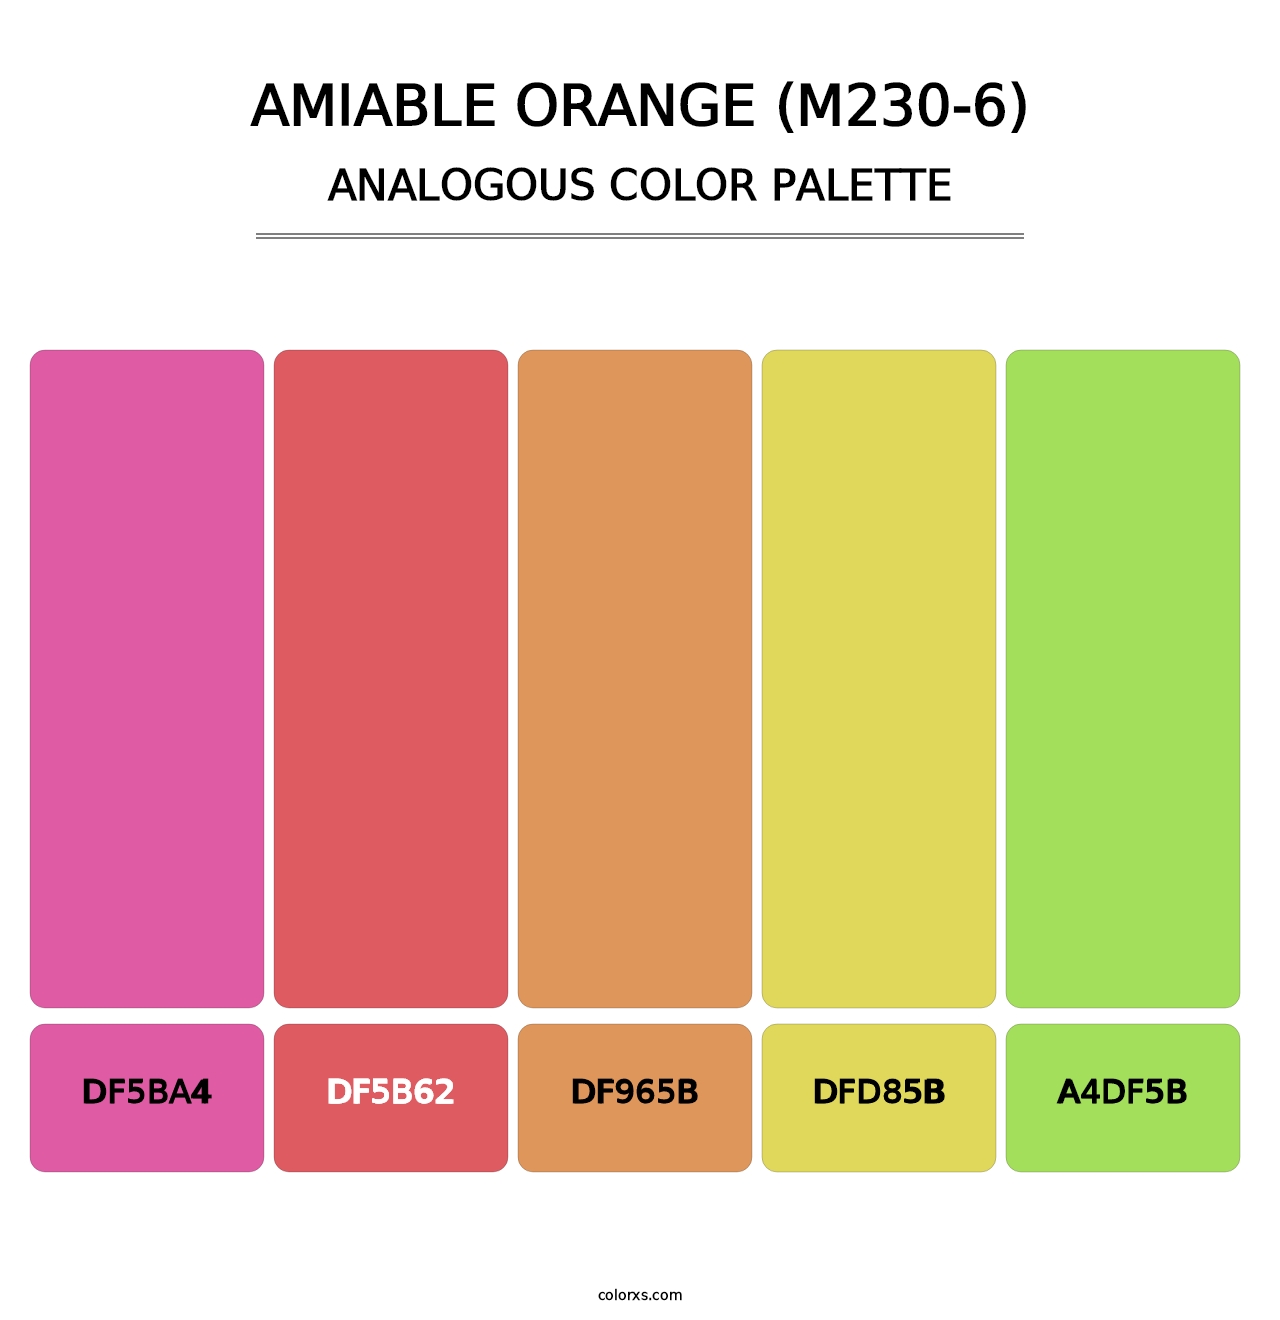 Amiable Orange (M230-6) - Analogous Color Palette